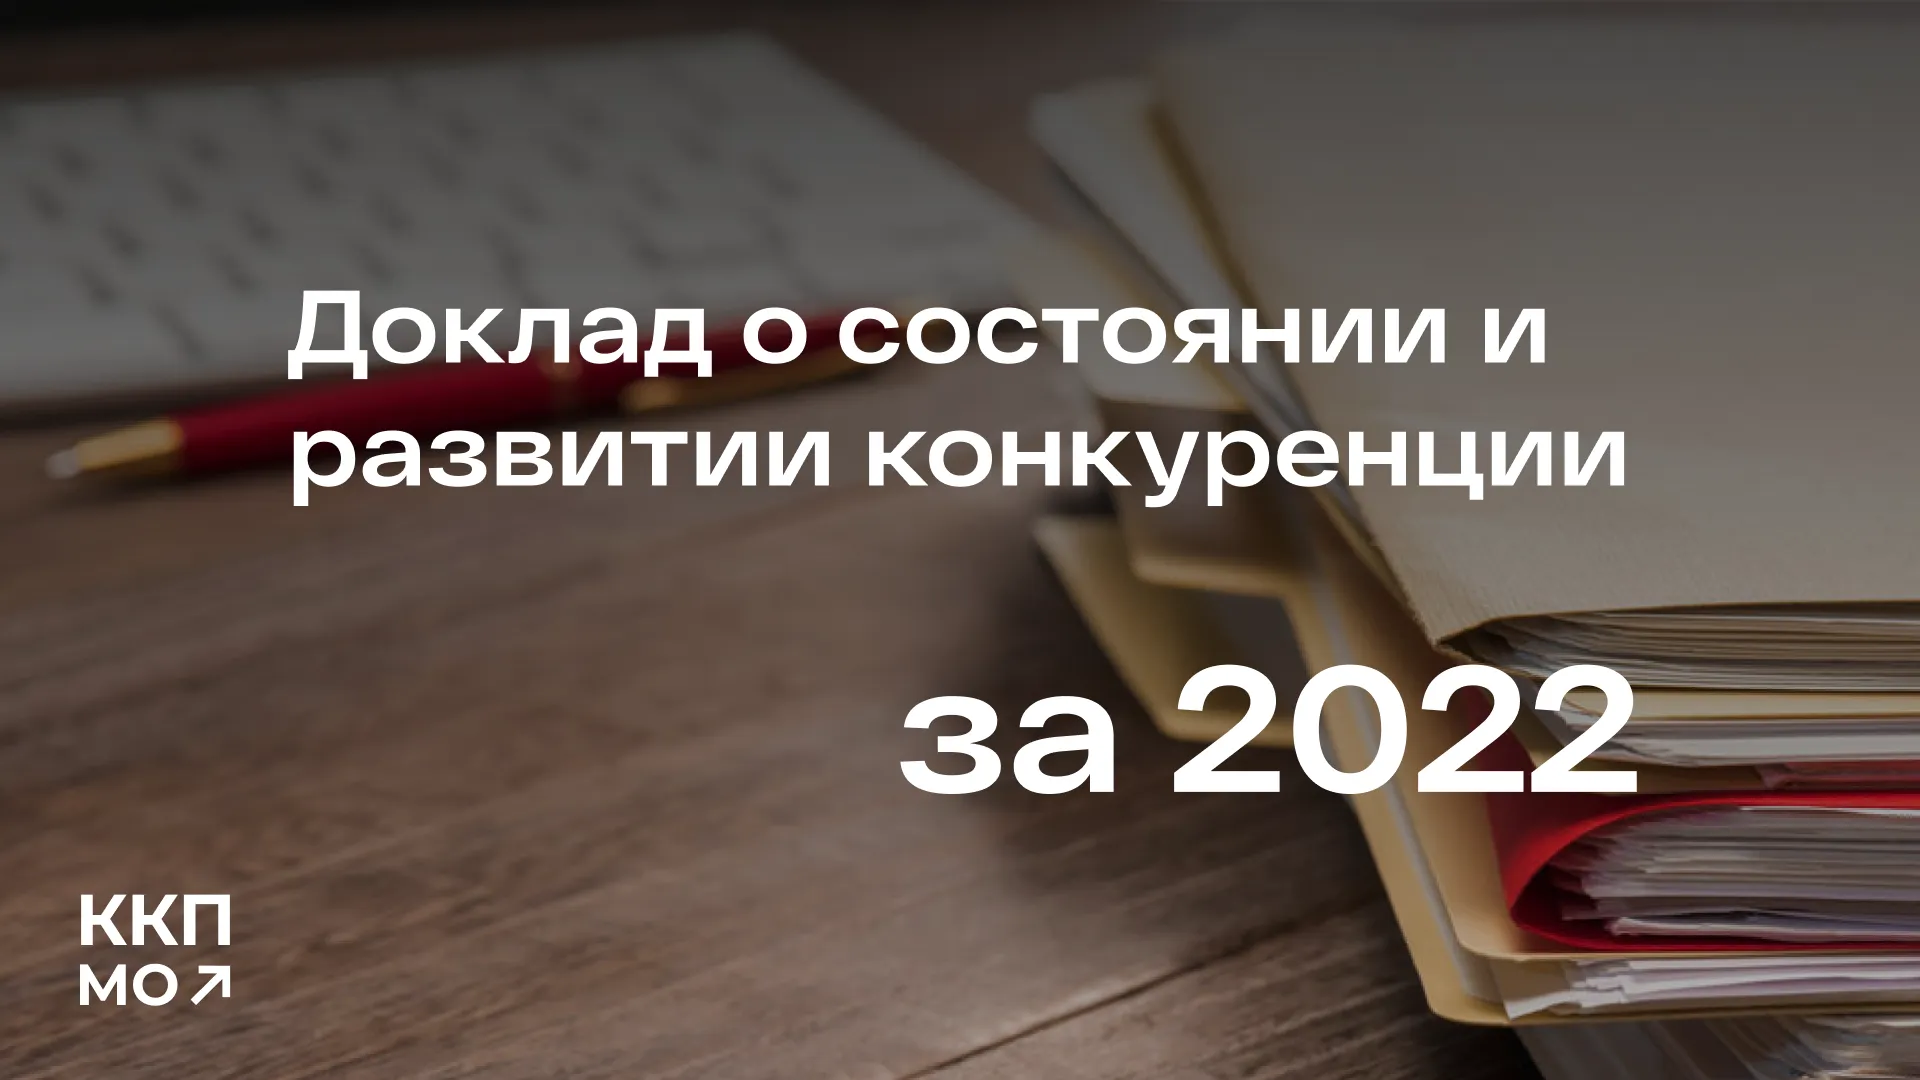 Подведены итоги 2022 года по состоянию и развитию конкуренции на товарных рынках Подмосковья